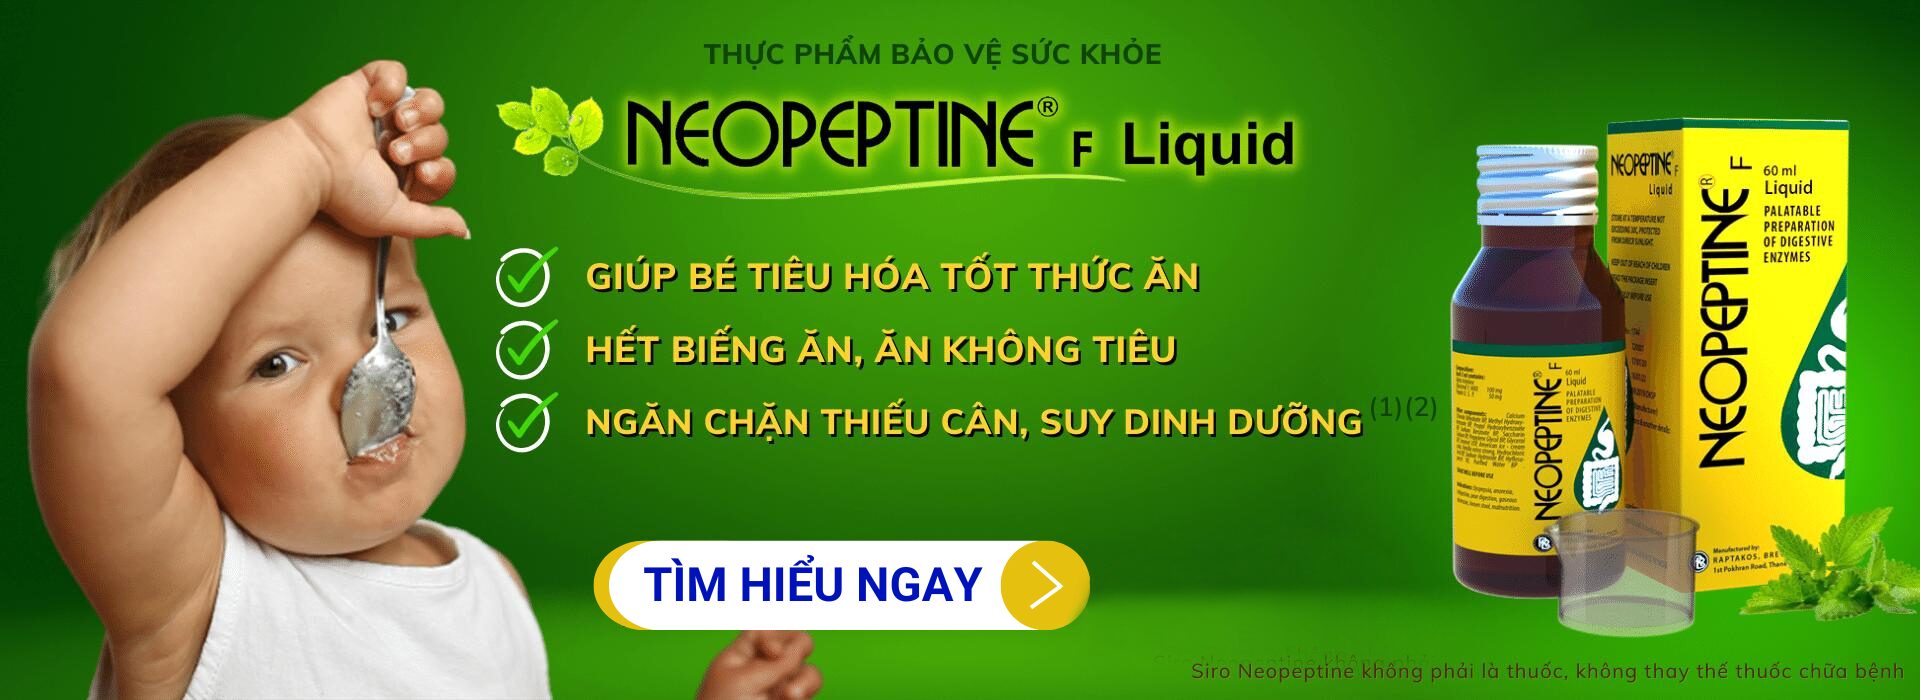 Thuốc Hỗ Trợ Tiêu Hóa Cho Trẻ – Neopeptine F Liquid 60ML